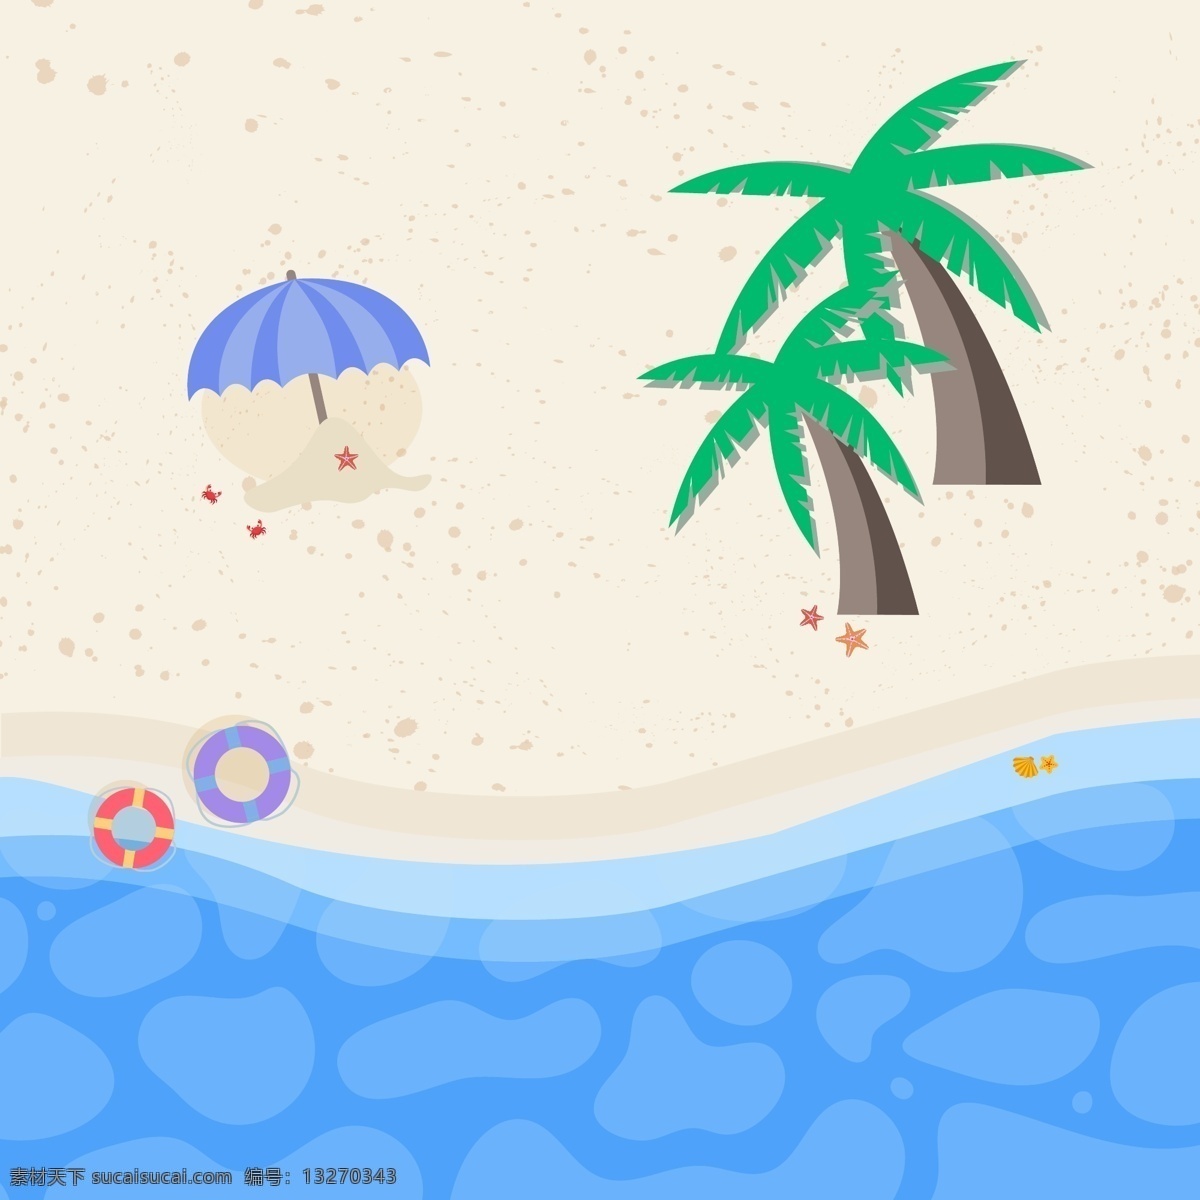 夏日 夏至 游泳 圈 椰子树 螃蟹 海星 贝壳 沙滩 海水 游泳圈 还行